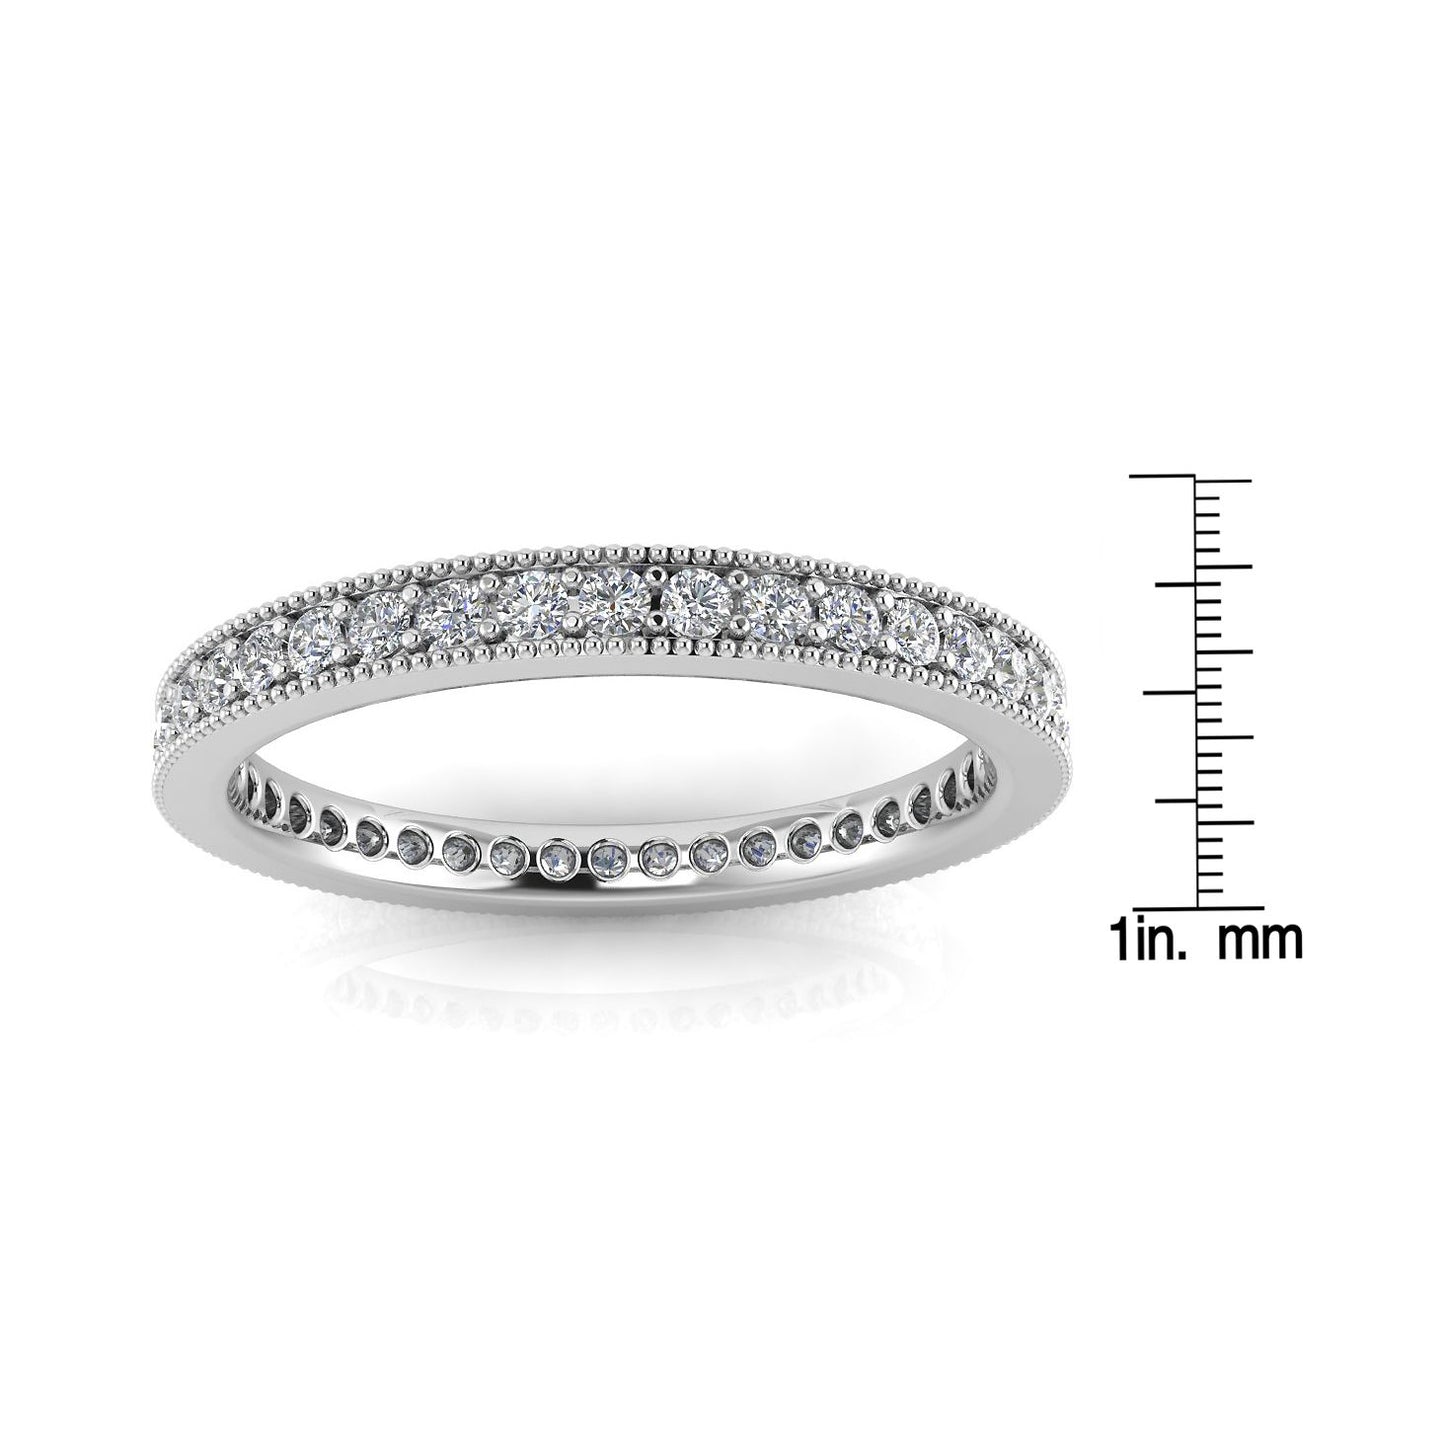 Round Brilliant Cut Diamond Pave & Milgrain Set Eternity Ring In Platinum  (0.5ct. Tw.) Ring Size 8